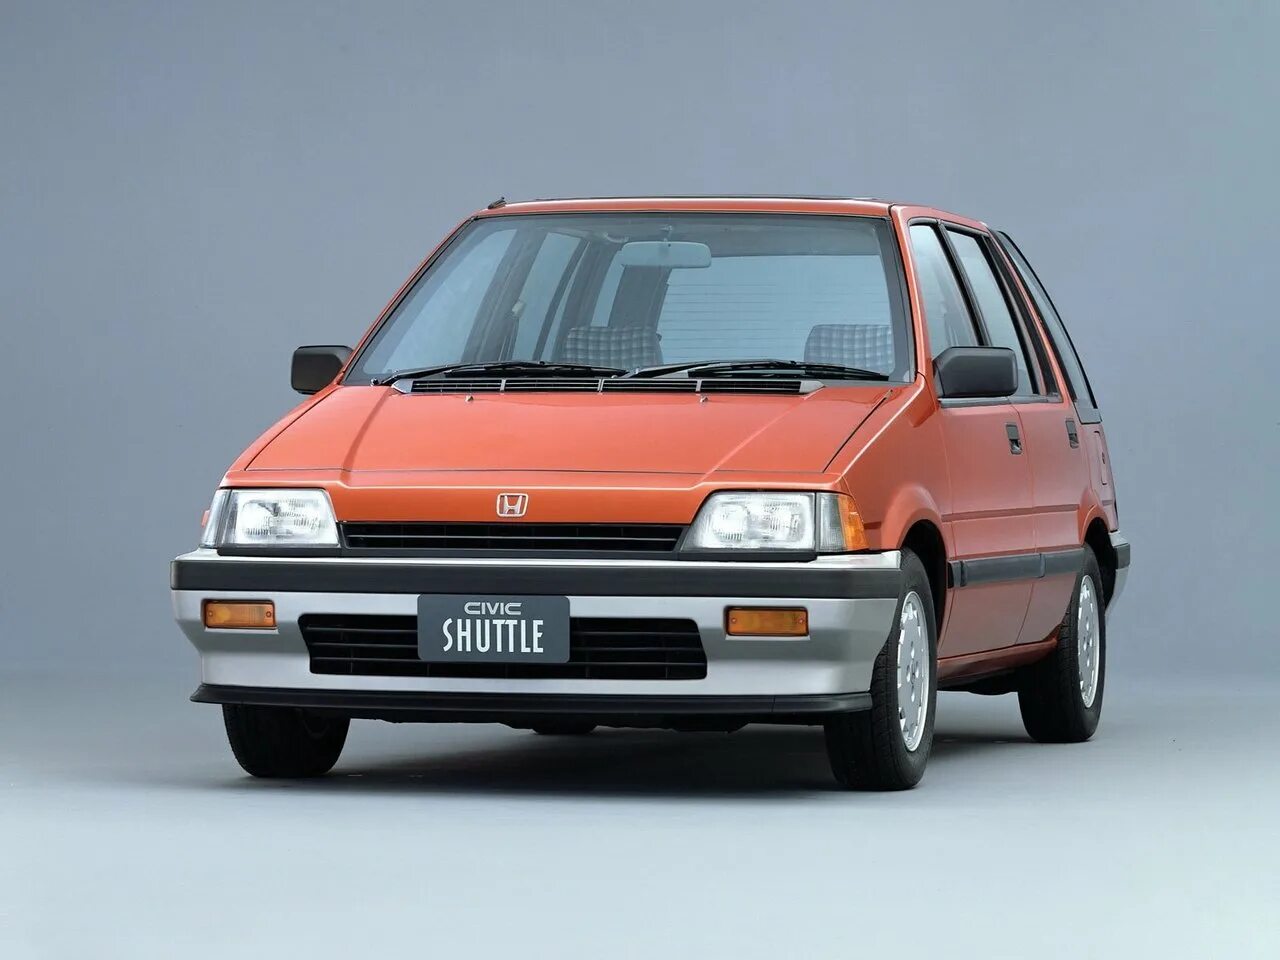 Civic shuttle. Honda Civic 1983-1987. Honda Civic 1983. Honda Civic Shuttle 1983. Honda Civic 3 Shuttle.